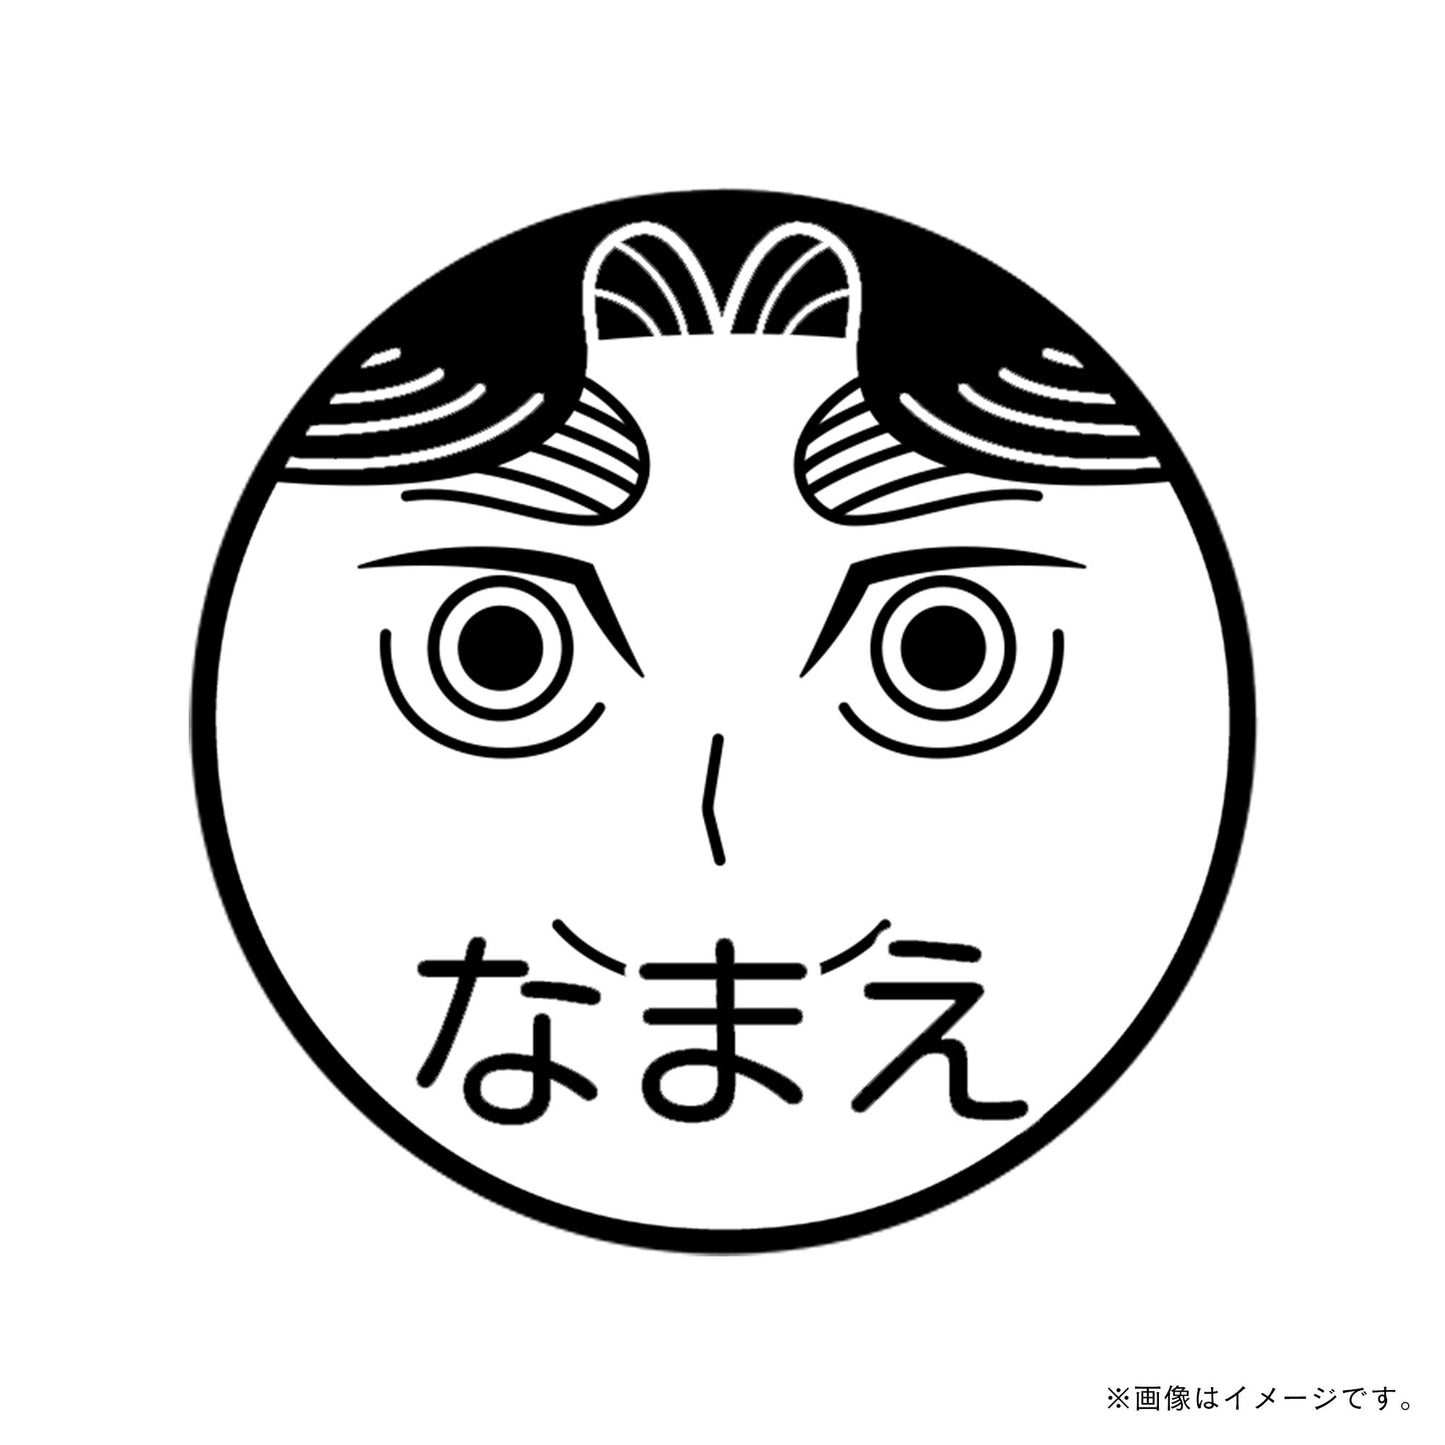 【忍たま乱太郎】平滝夜叉丸・ネーム印